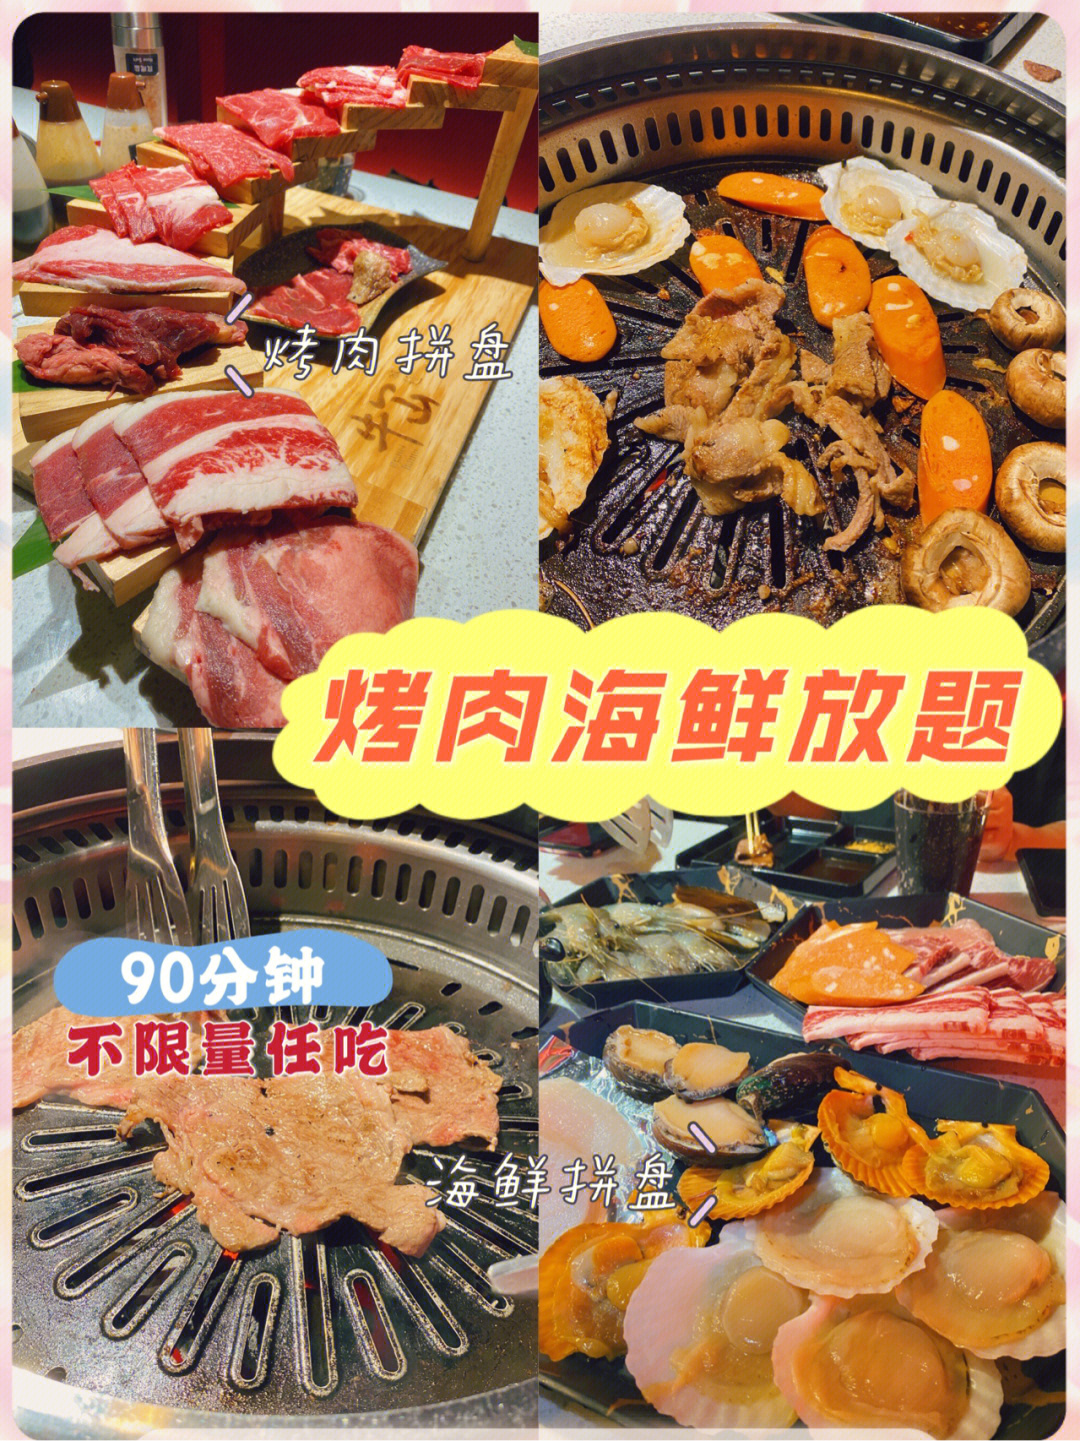 位于江泰路有一家叫牛冚(kǎn)烤肉的放题店限时90分钟90149/位 主